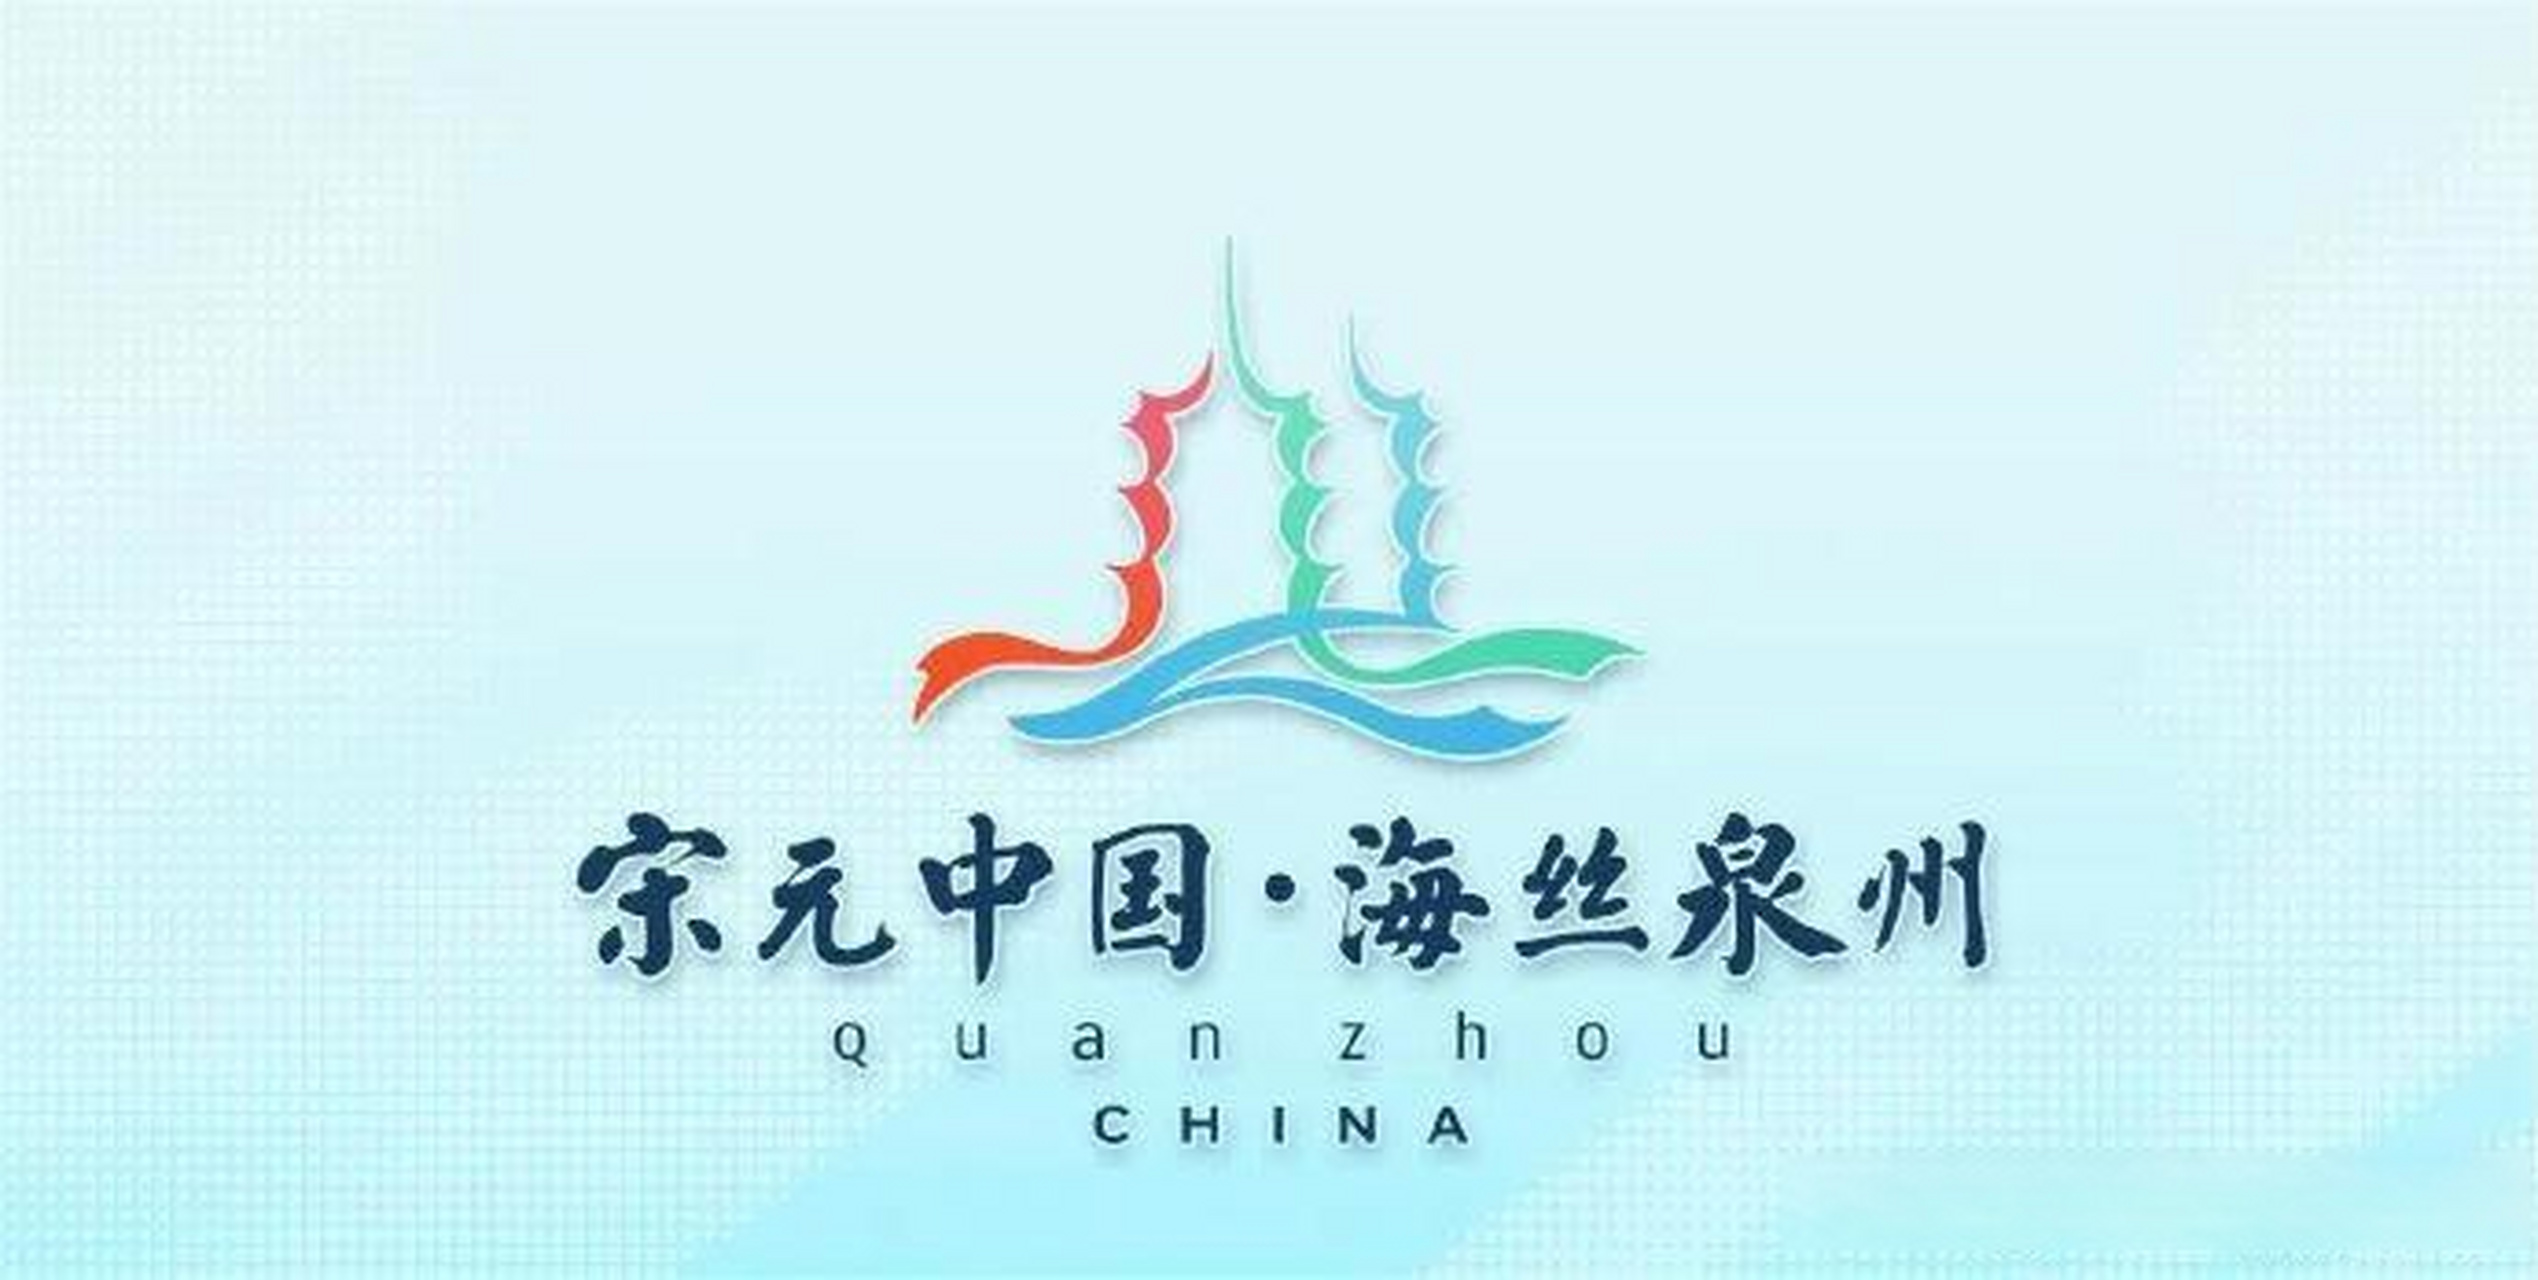 泉州市已经发布了城市logo,这标志着福建省泉州市成为了第三个完成